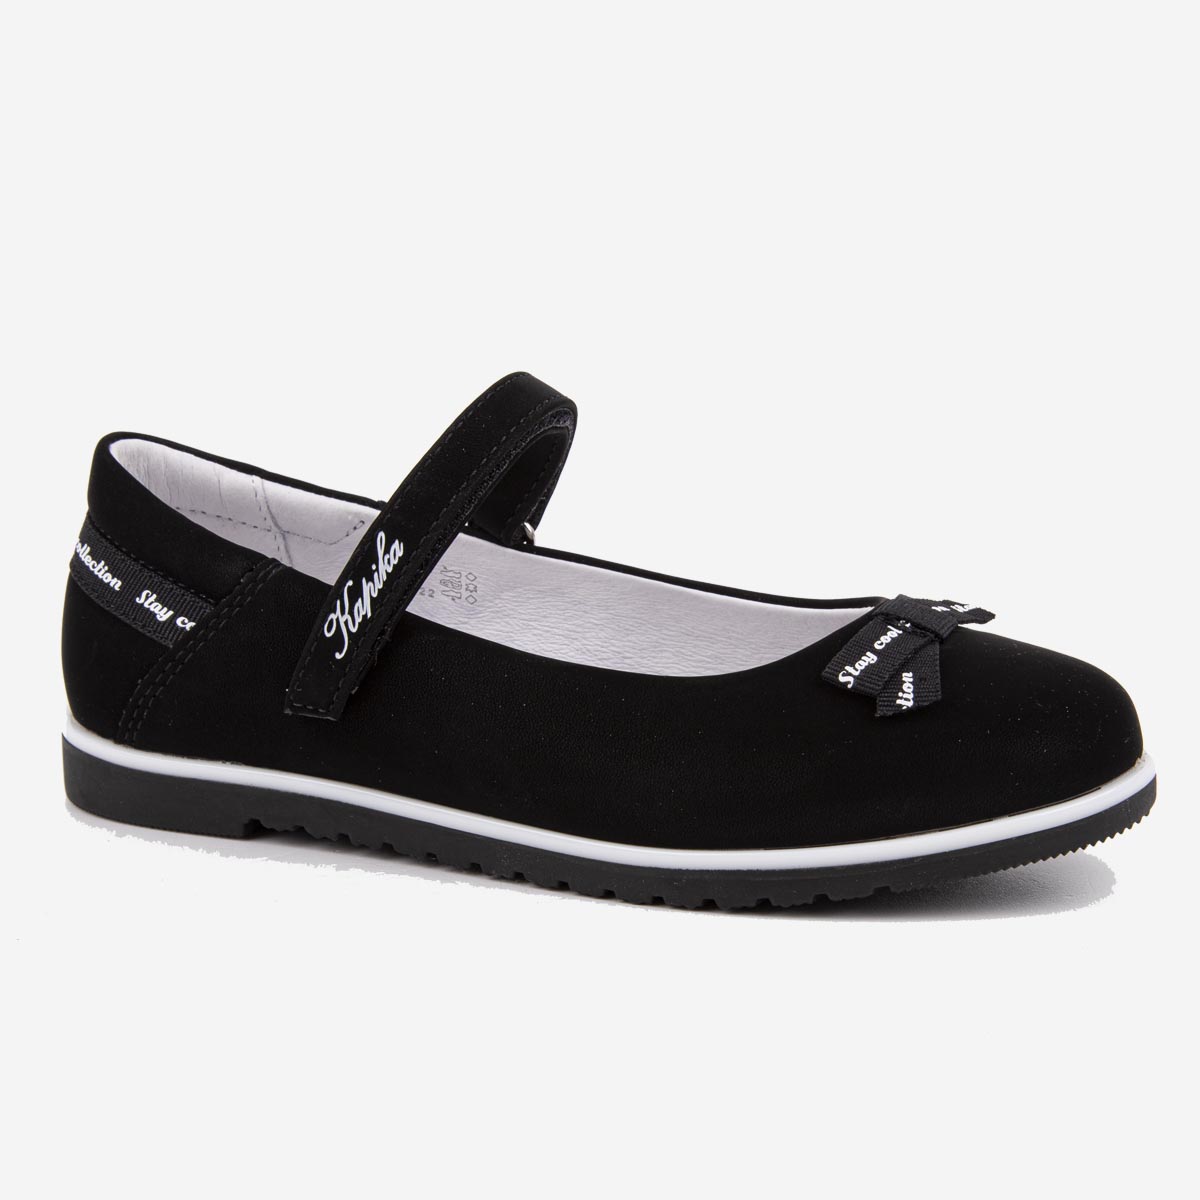 Туфли для девочек Kapika 23746п цв. черный р. 32